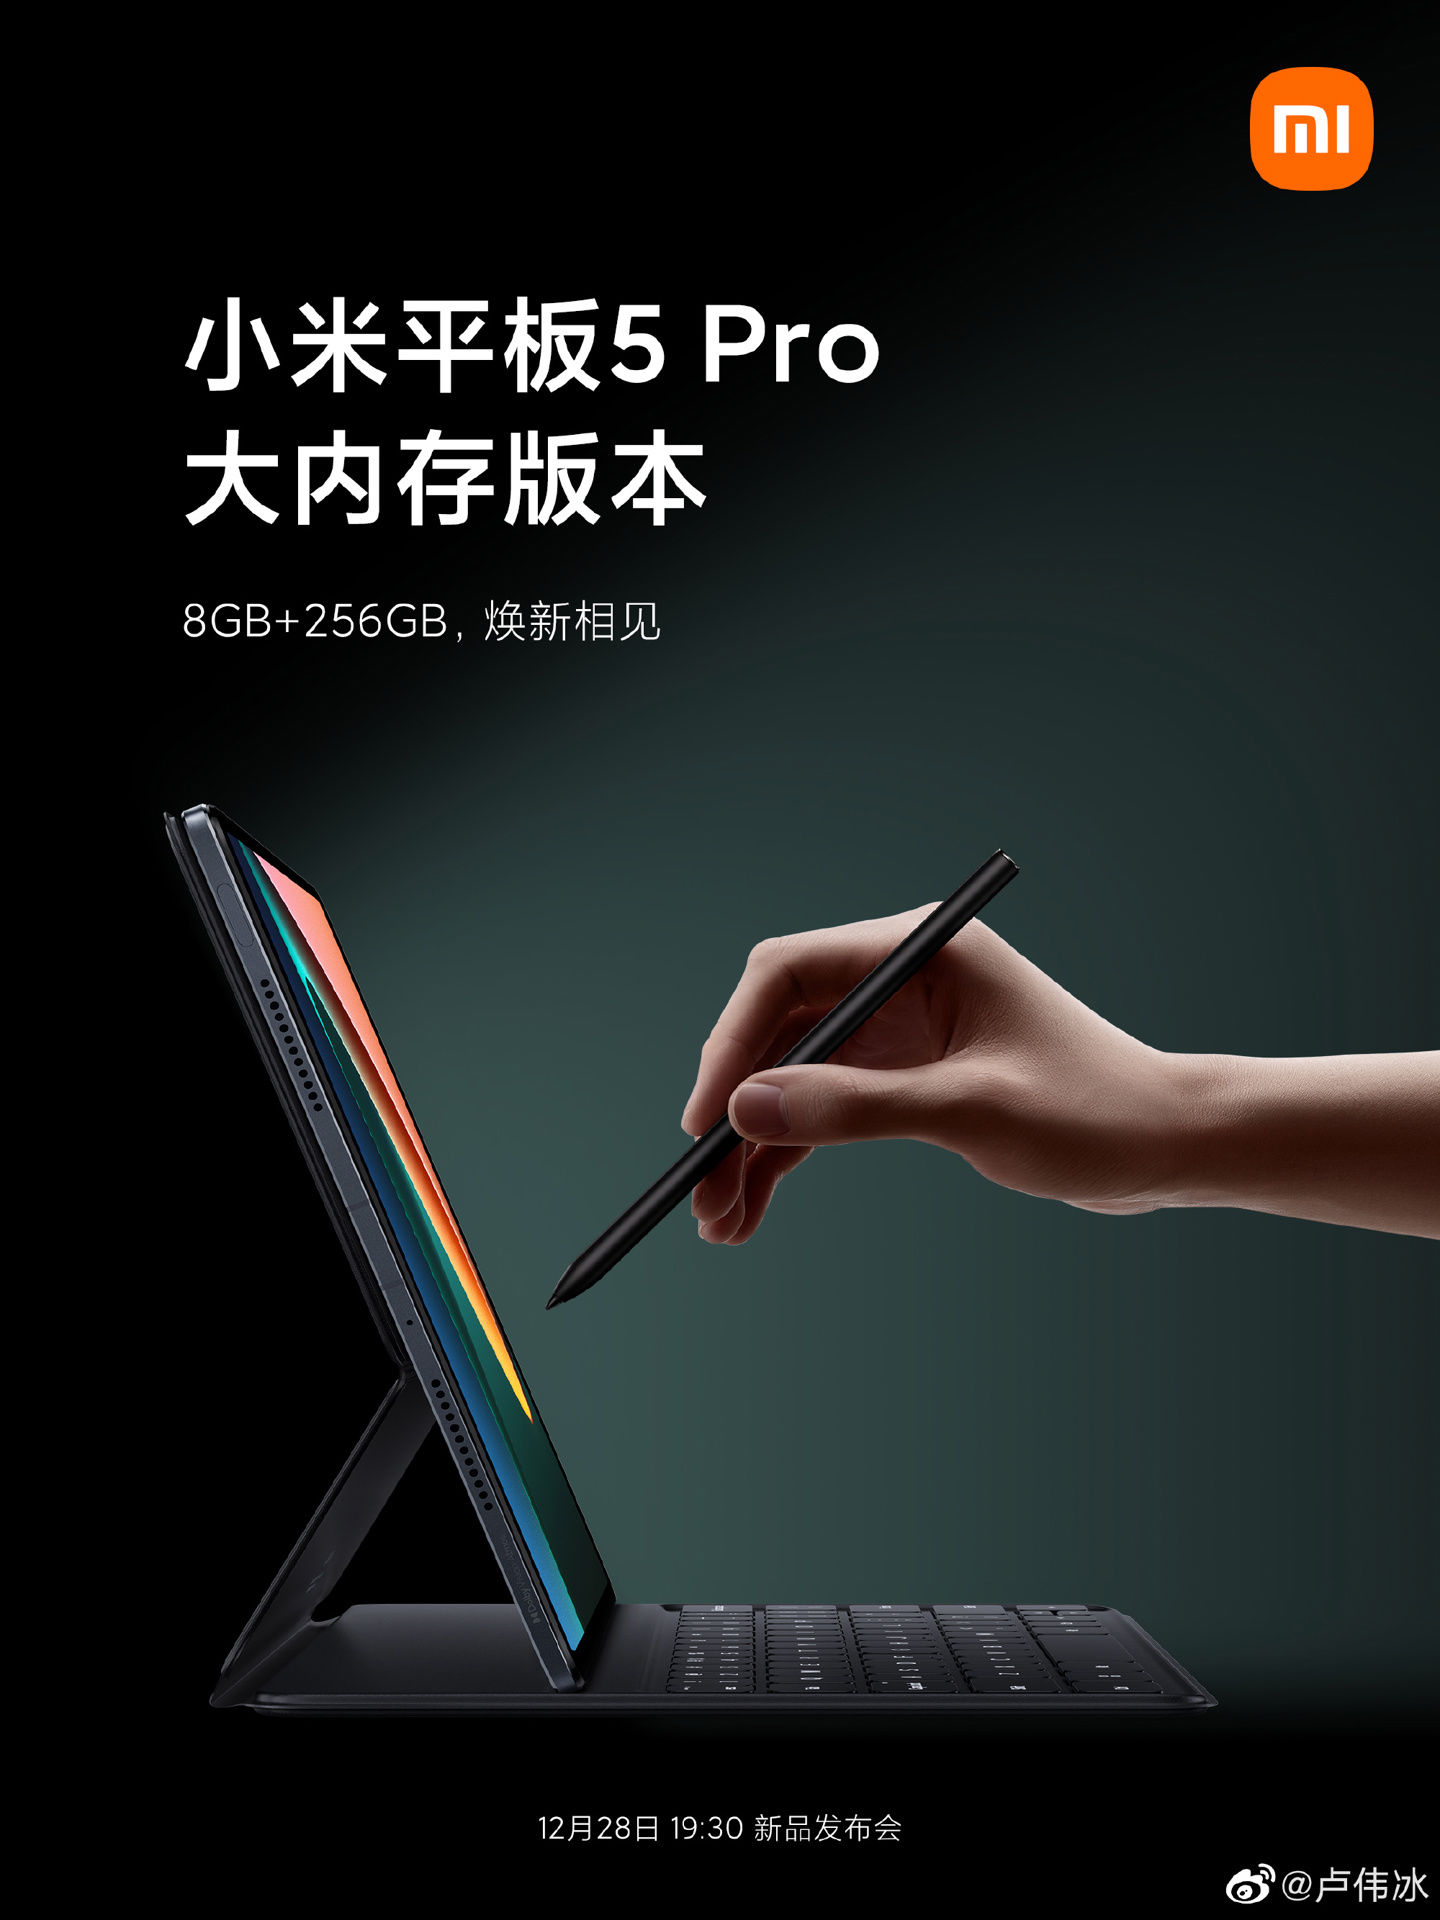 键盘|小米平板 5 Pro 大内存版本将于 28 日发布，还有新色键盘